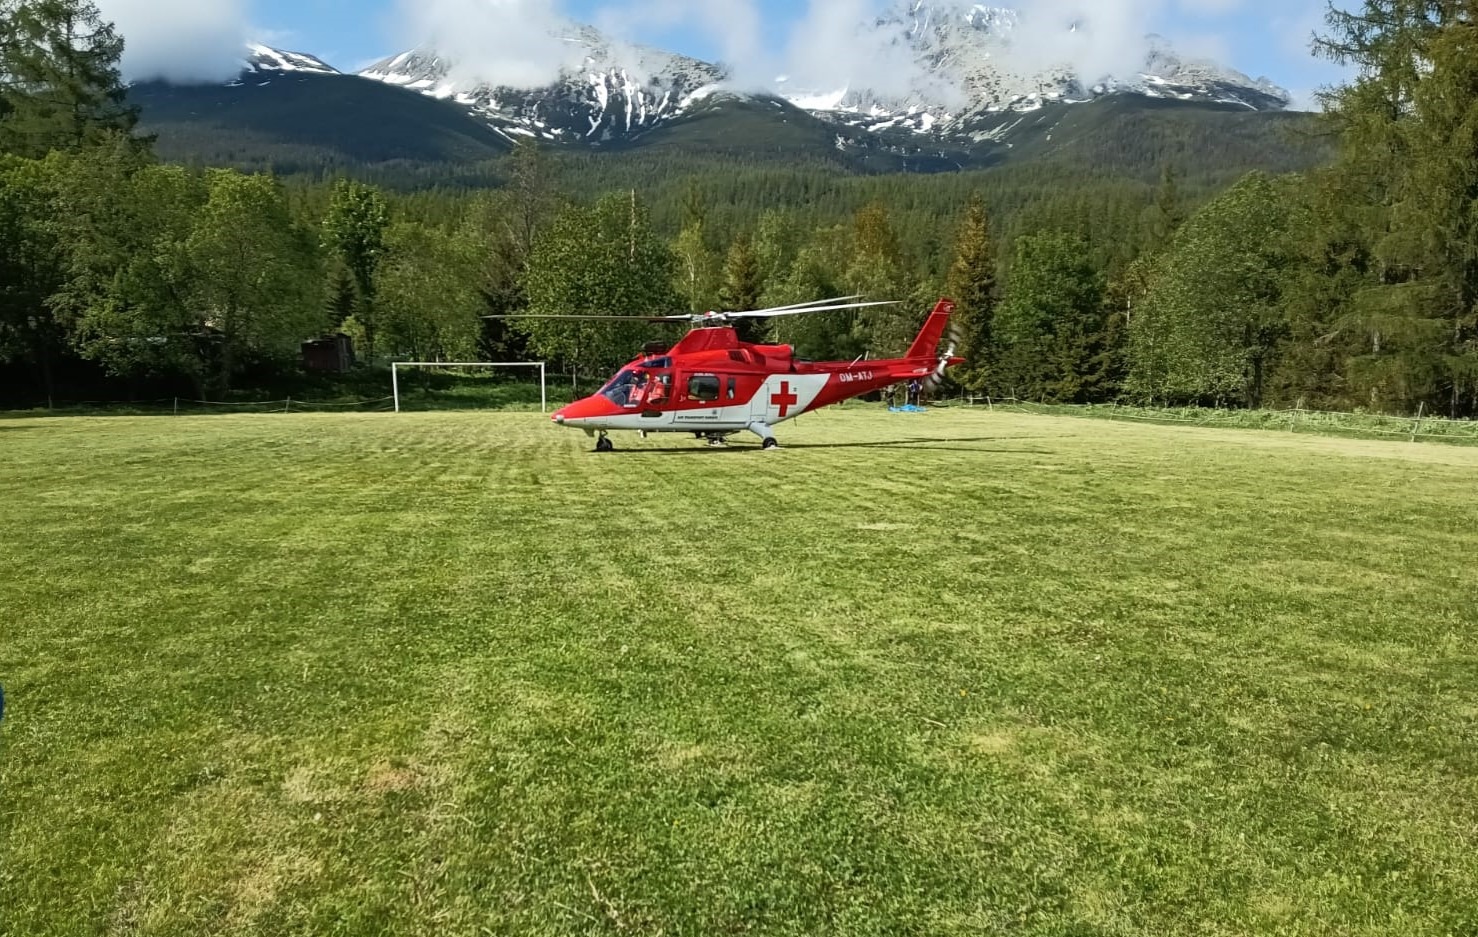 Prvú pomoc zranenej turistke zabezpečovala aj Vrtuľníková záchranná zdravotná služba